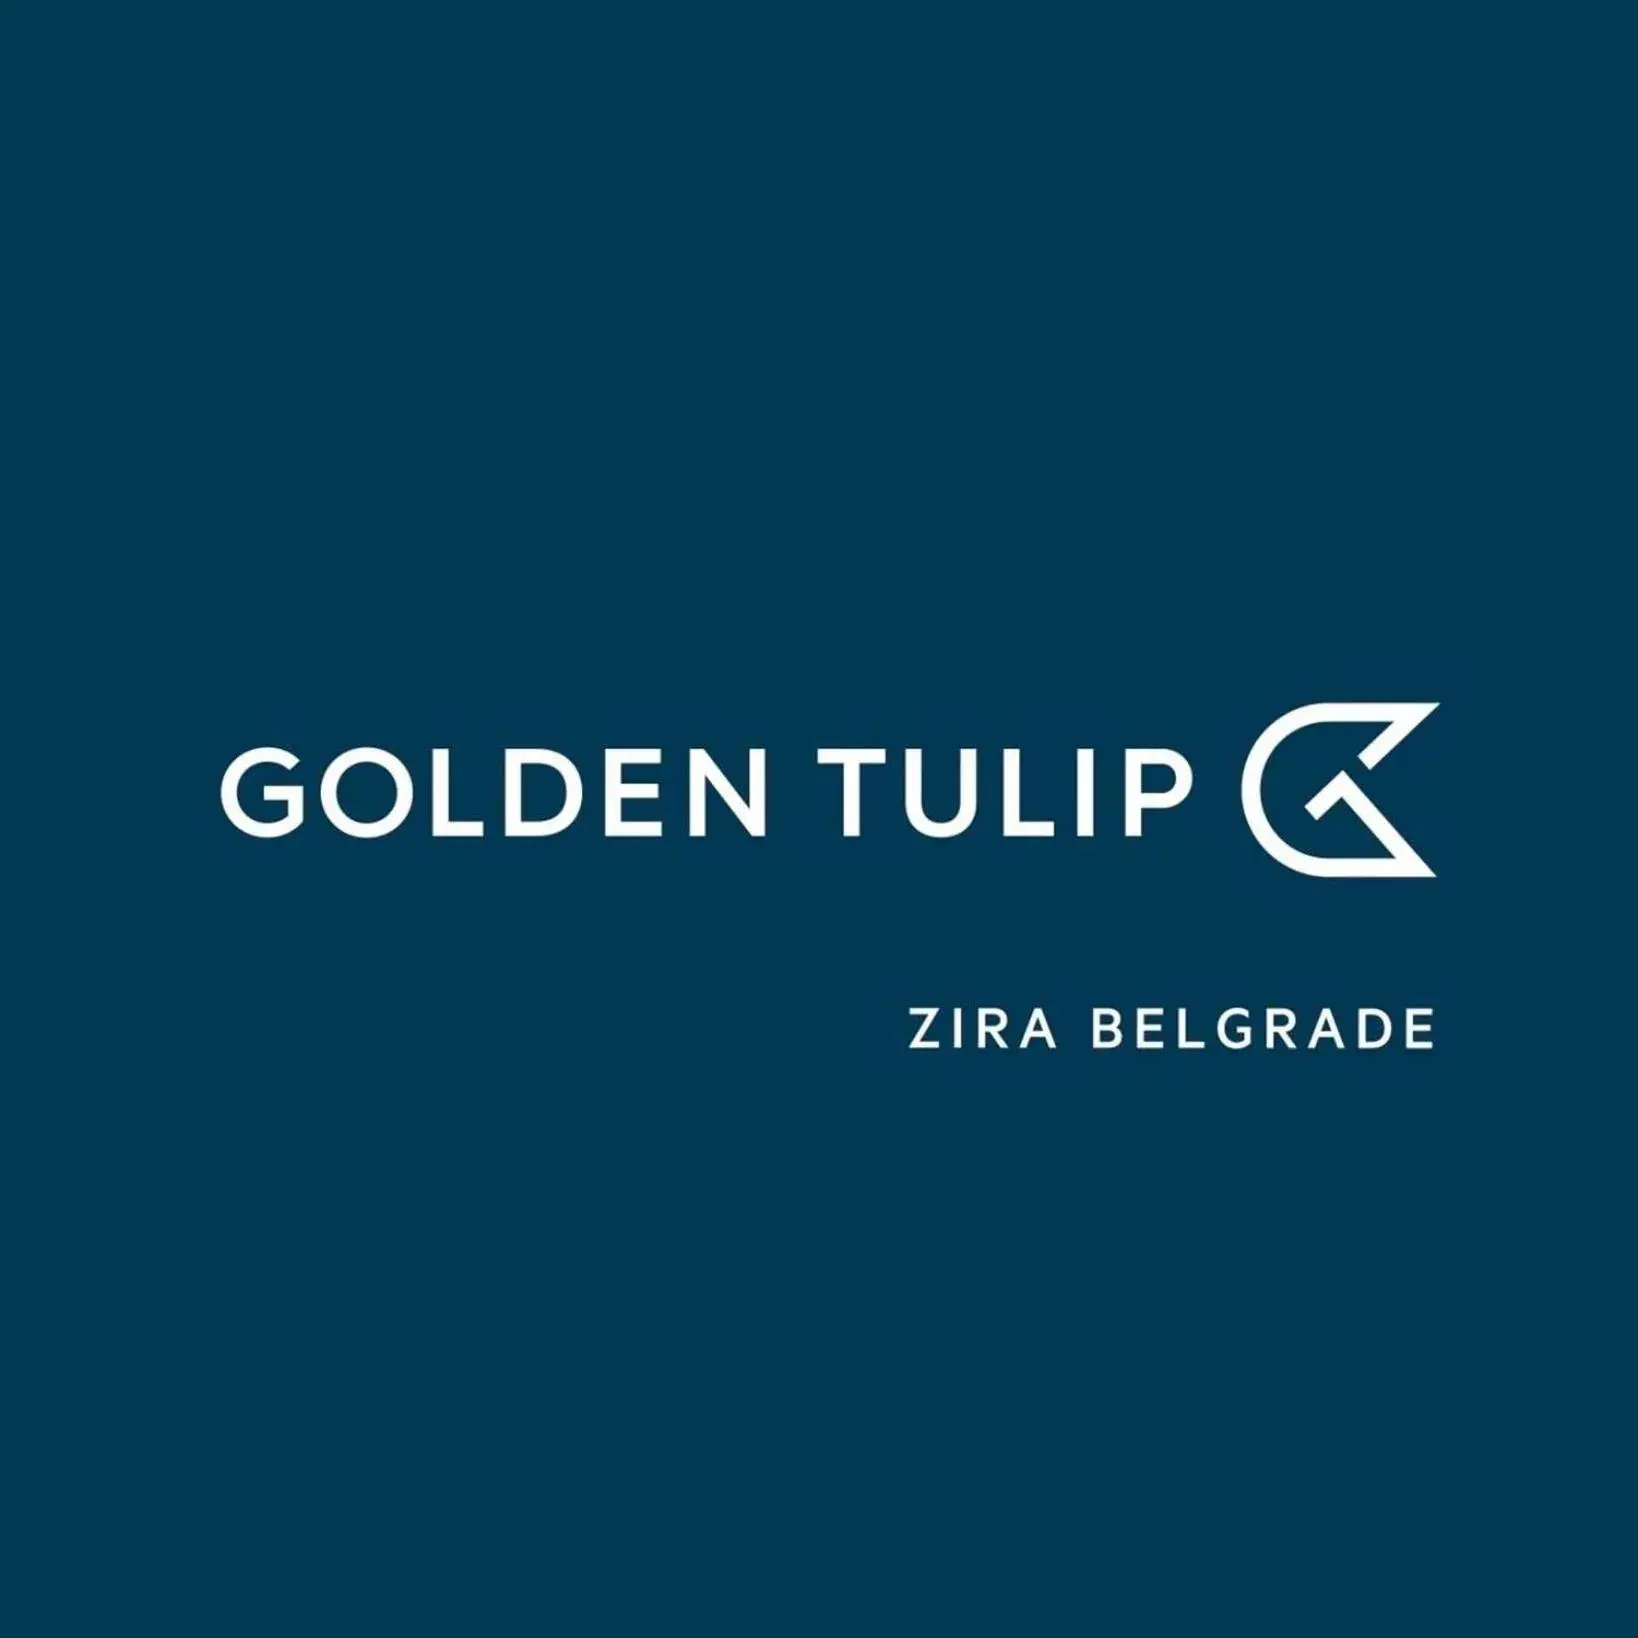 Property logo or sign in Golden Tulip Zira